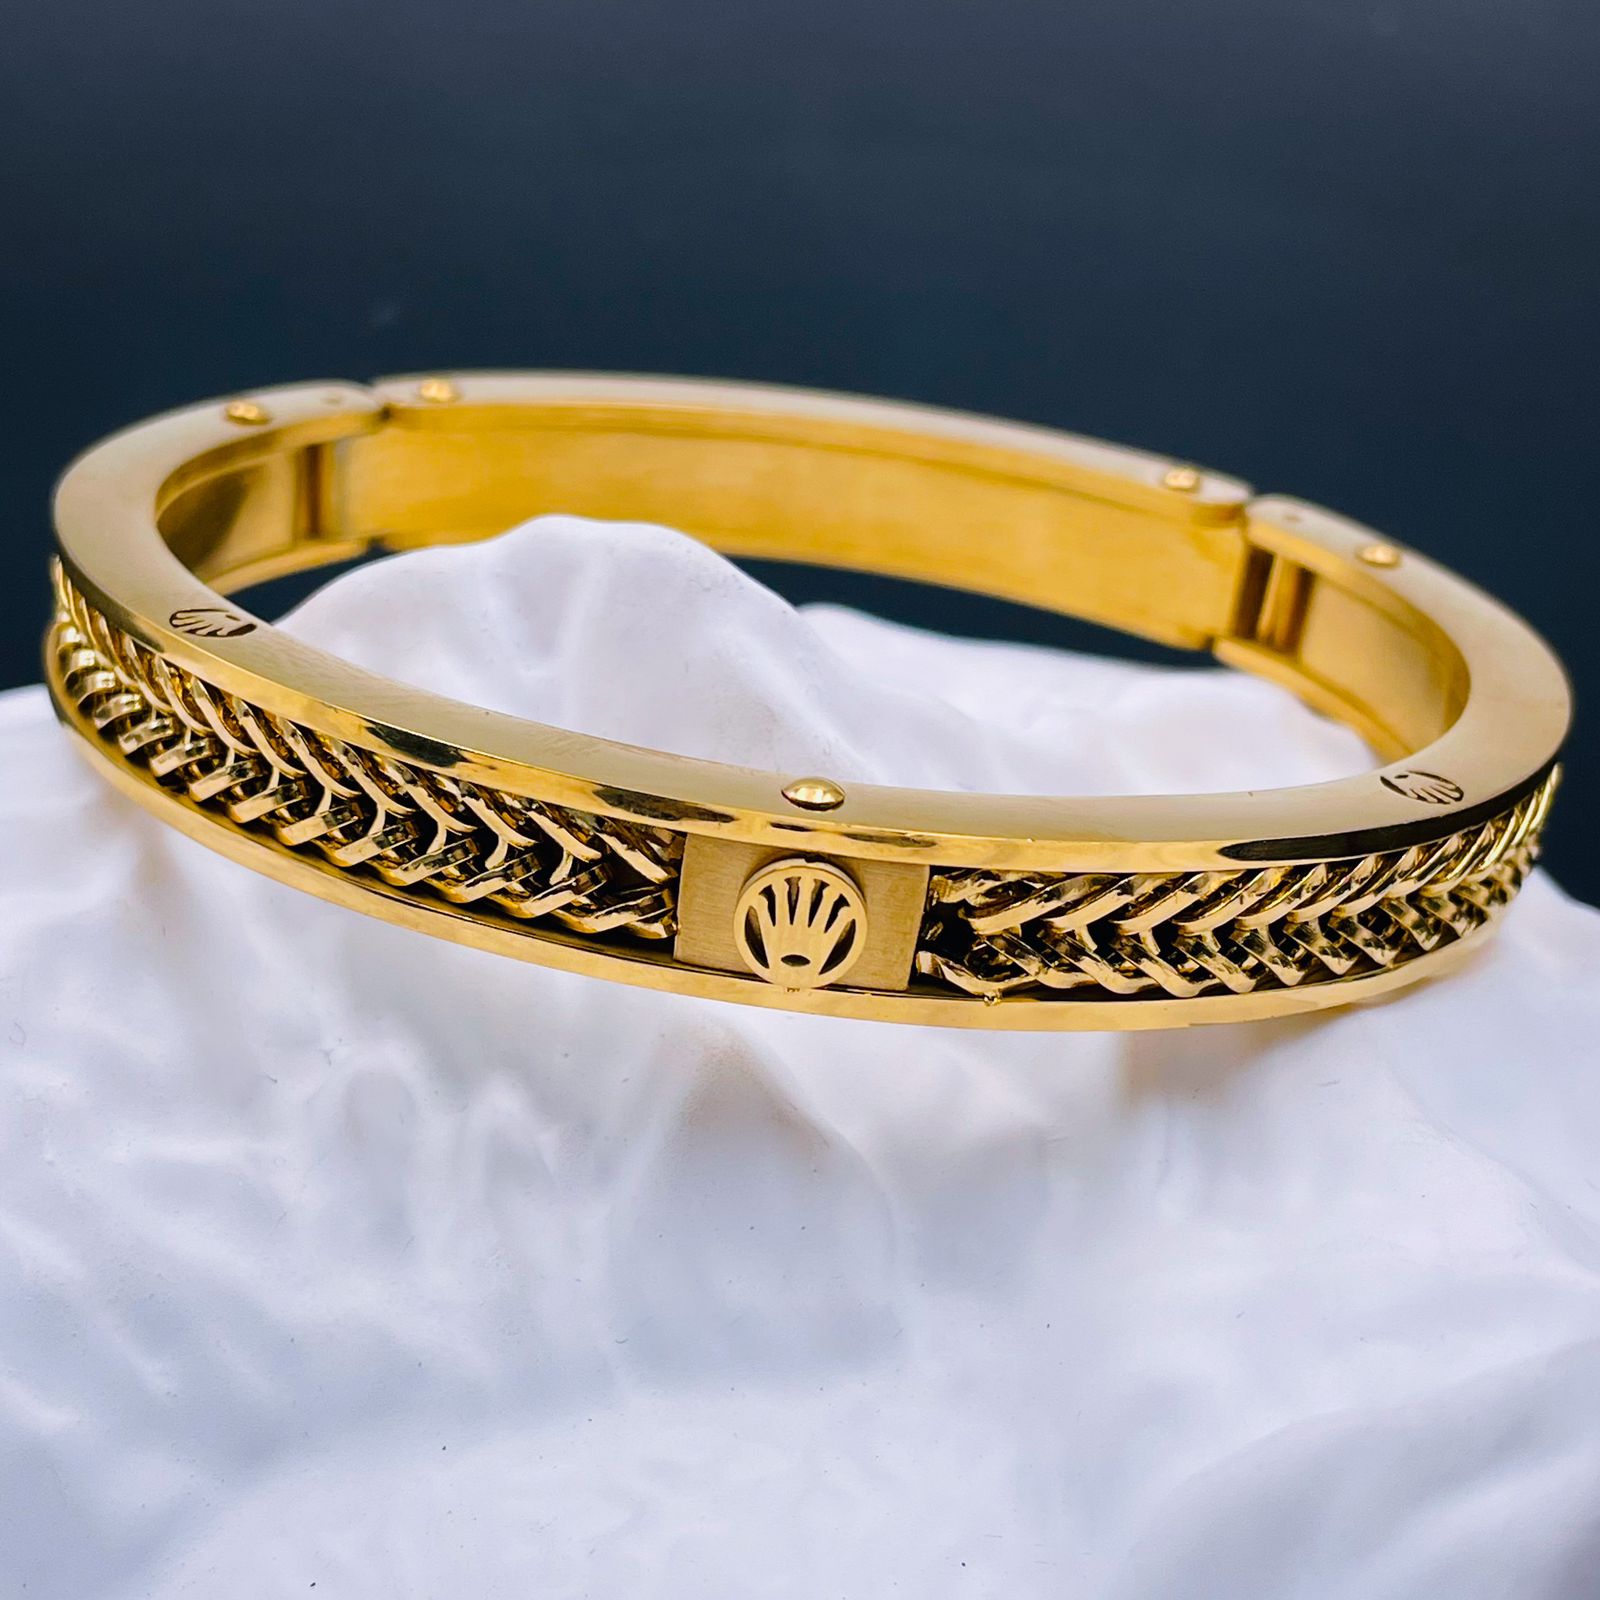 Luxury gold bracelets stock photo. Image of ruby, decoration - 26907390